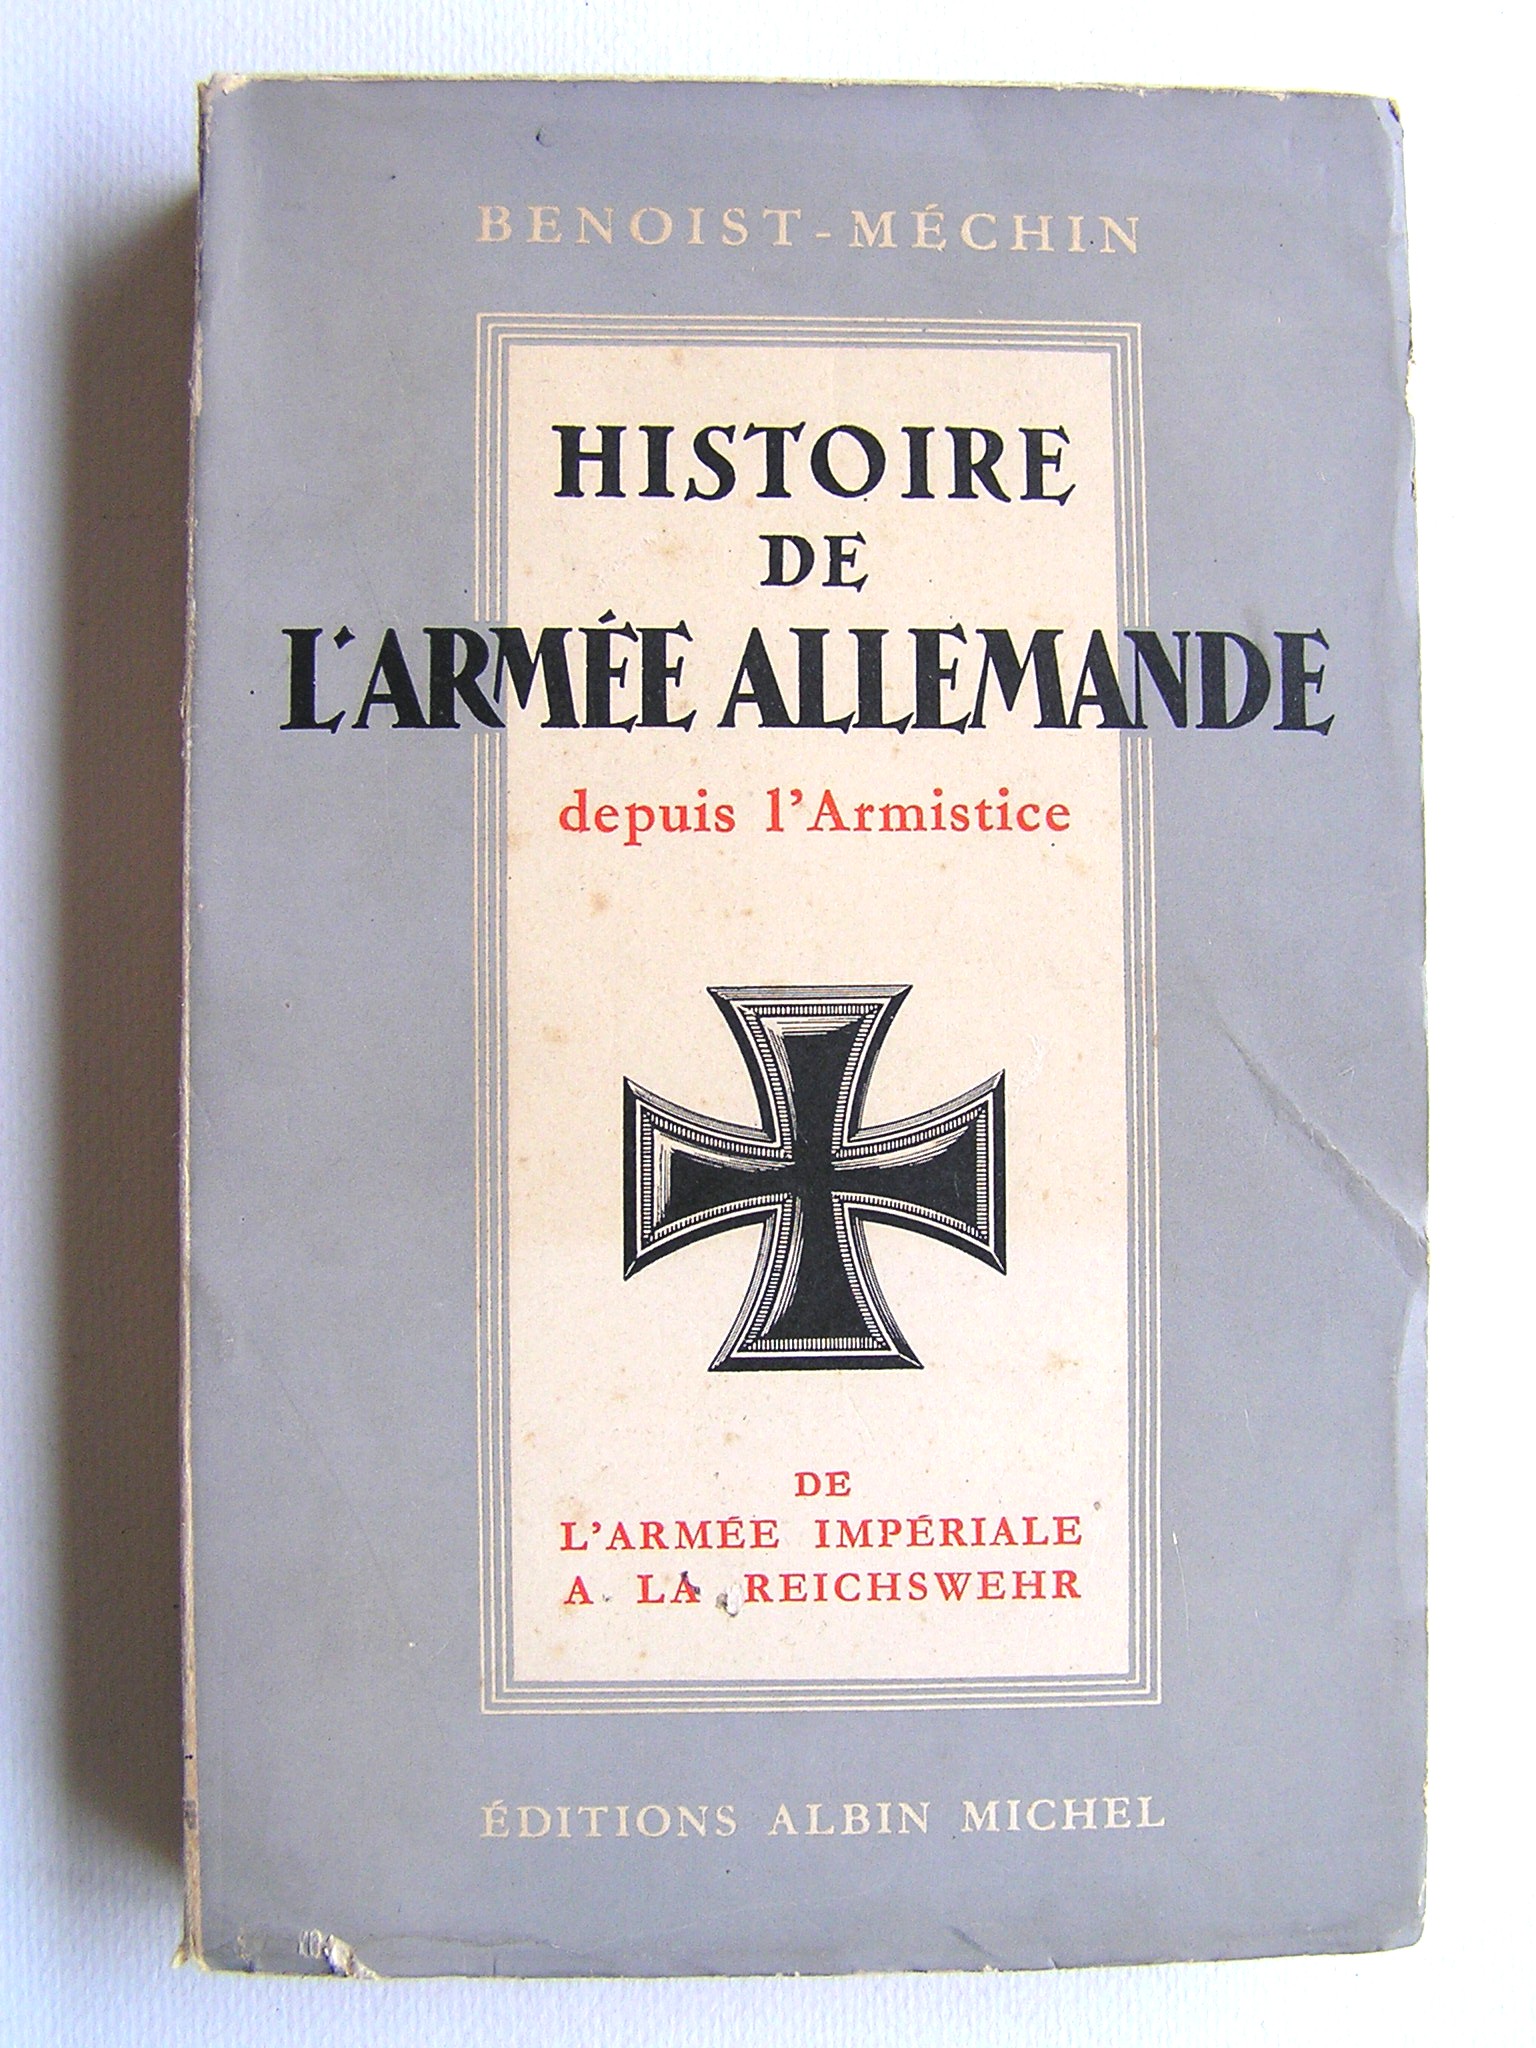 histoire de l armee allemande depuis l armistice tome 1 de l armee imperiale a la reichwehr